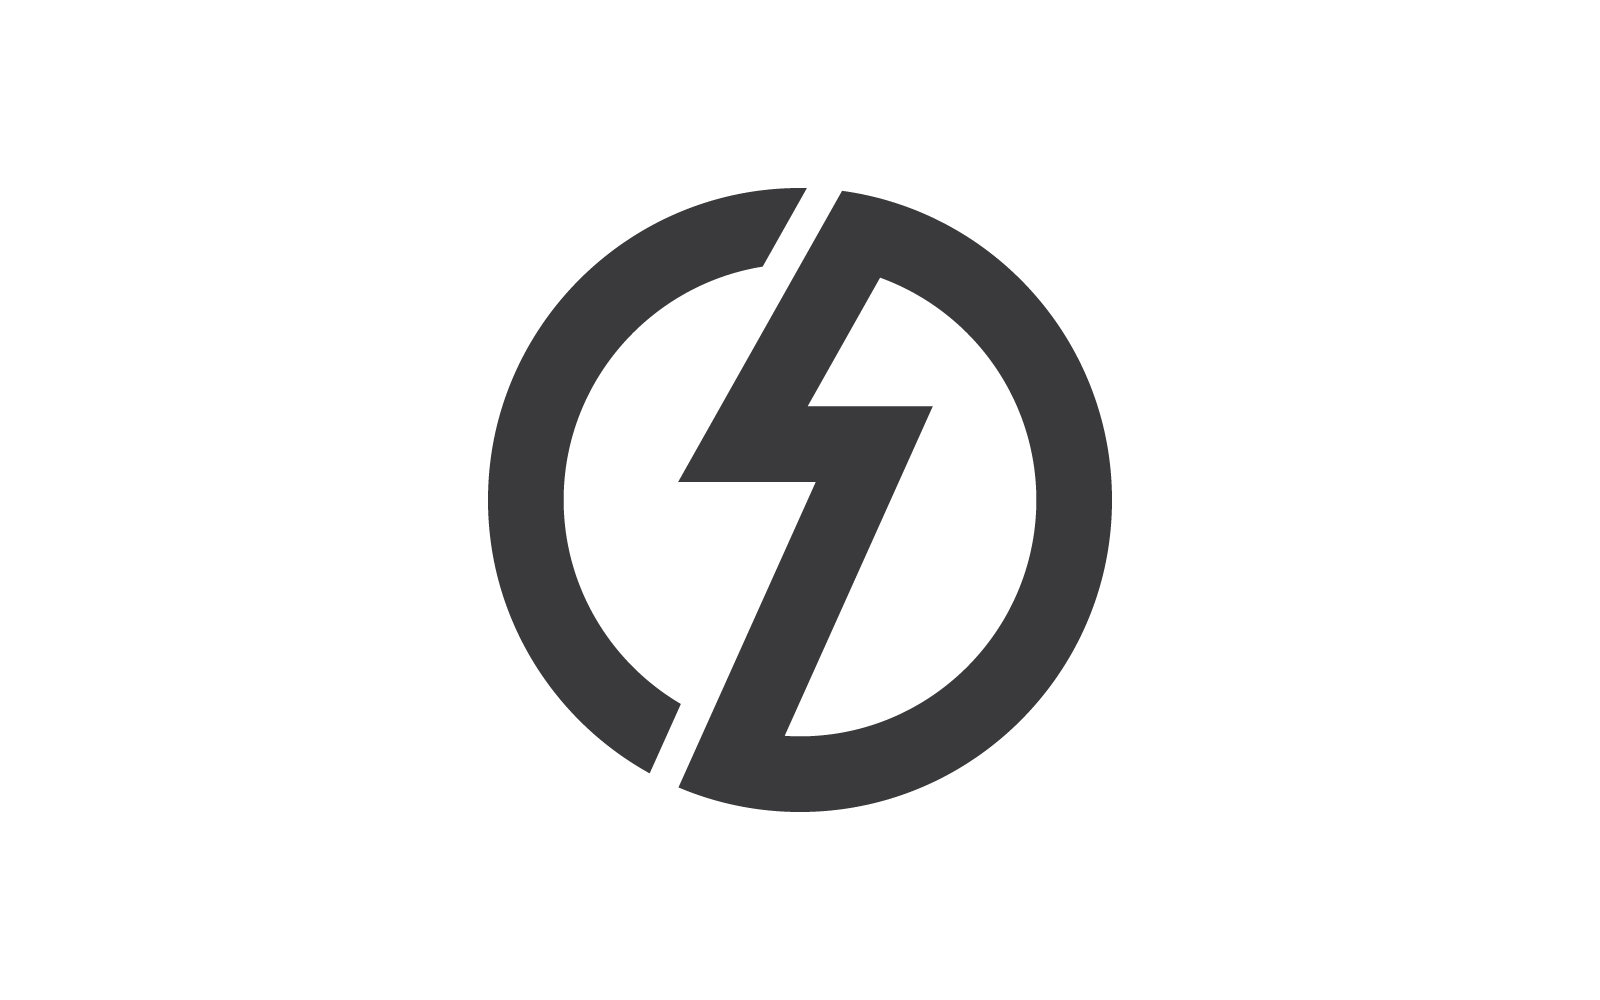 Power lightning logo illustration vector design